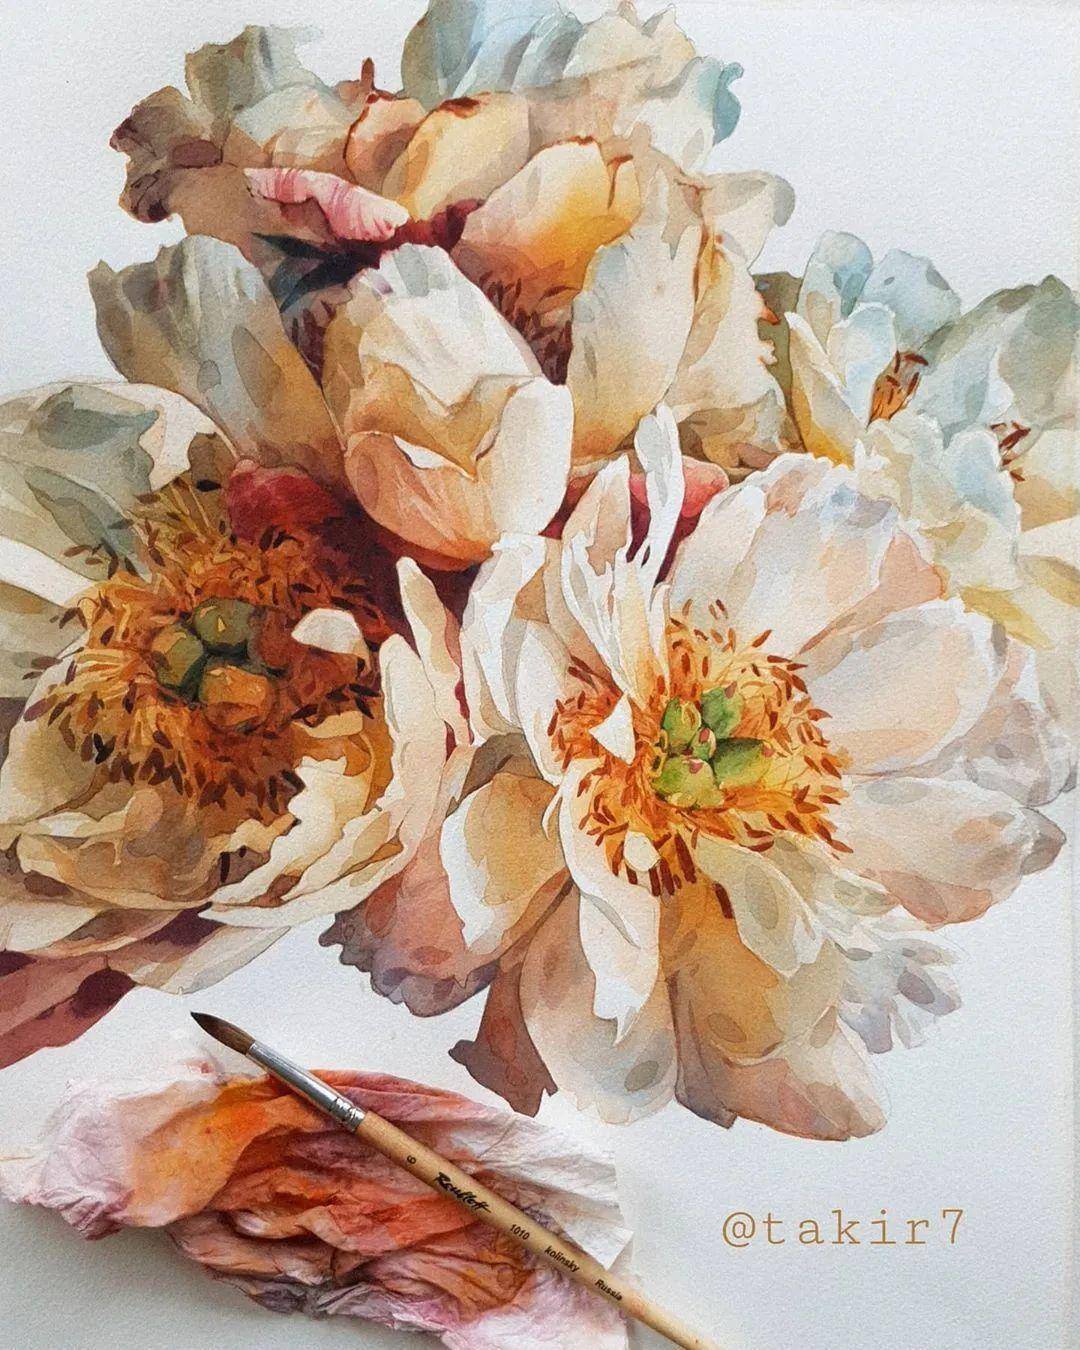 俄罗斯画家tati shundeeva,用水彩打造的玫瑰伊甸园